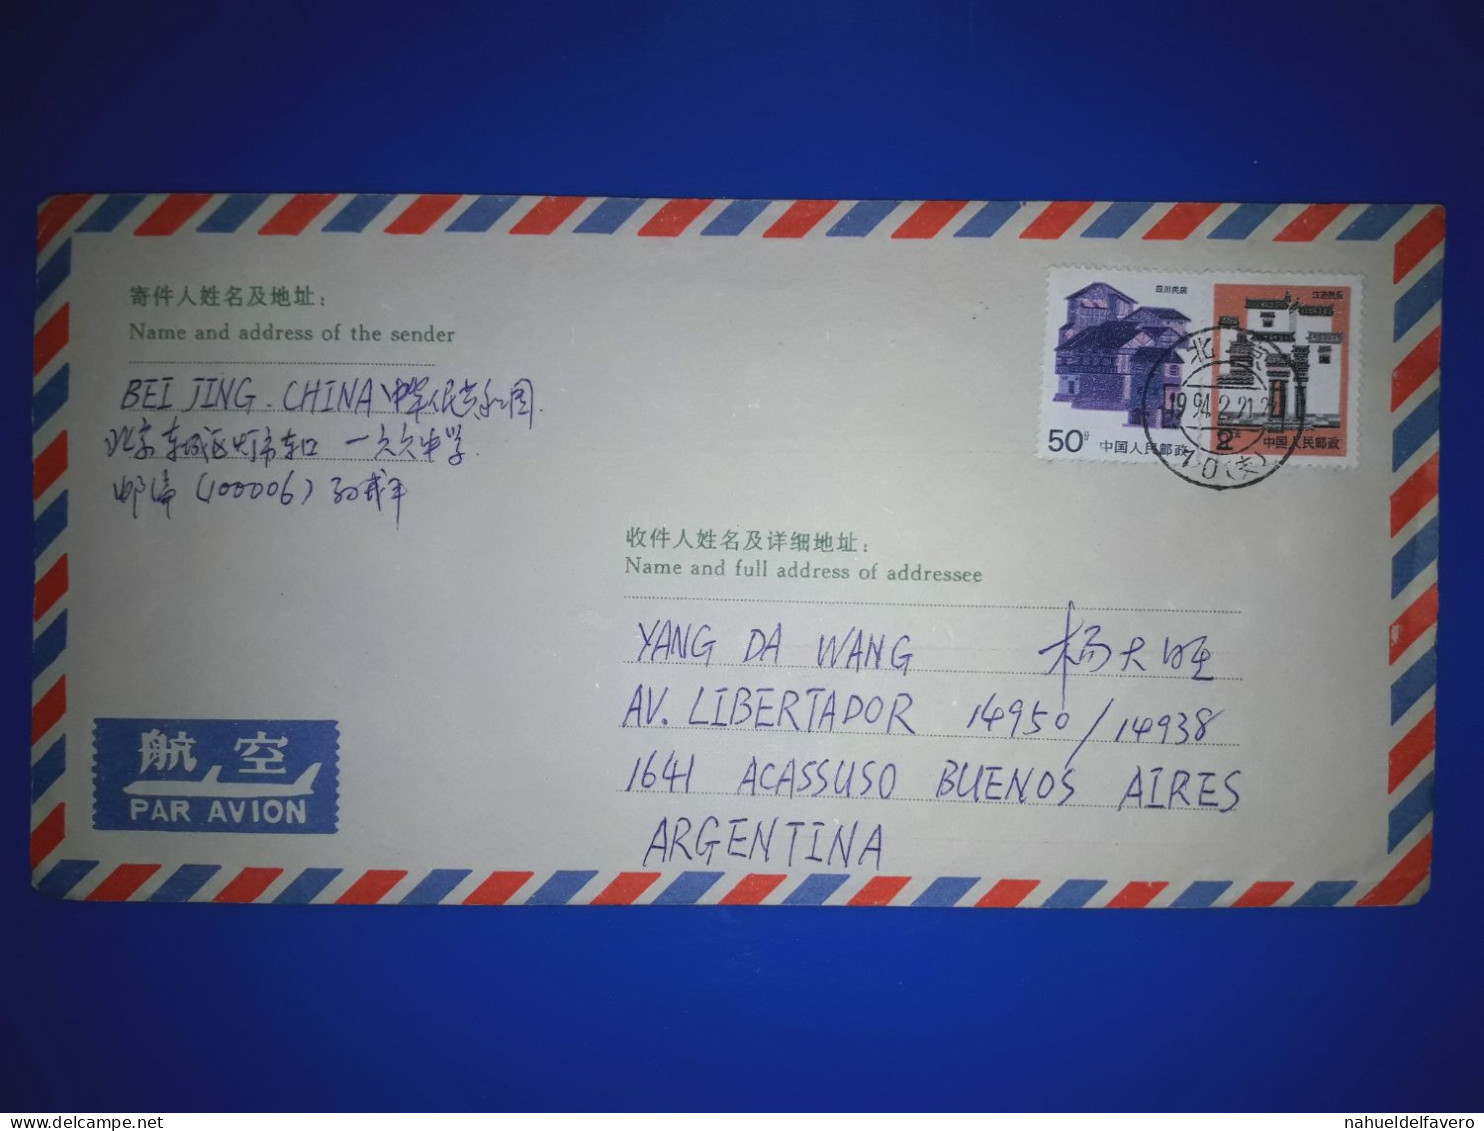 RÉPUBLIQUE POPULAIRE DE CHINE; Enveloppe D'air Circulée Par Avion à Destination De Buenos Aires, Argentine. Année 1994. - Used Stamps